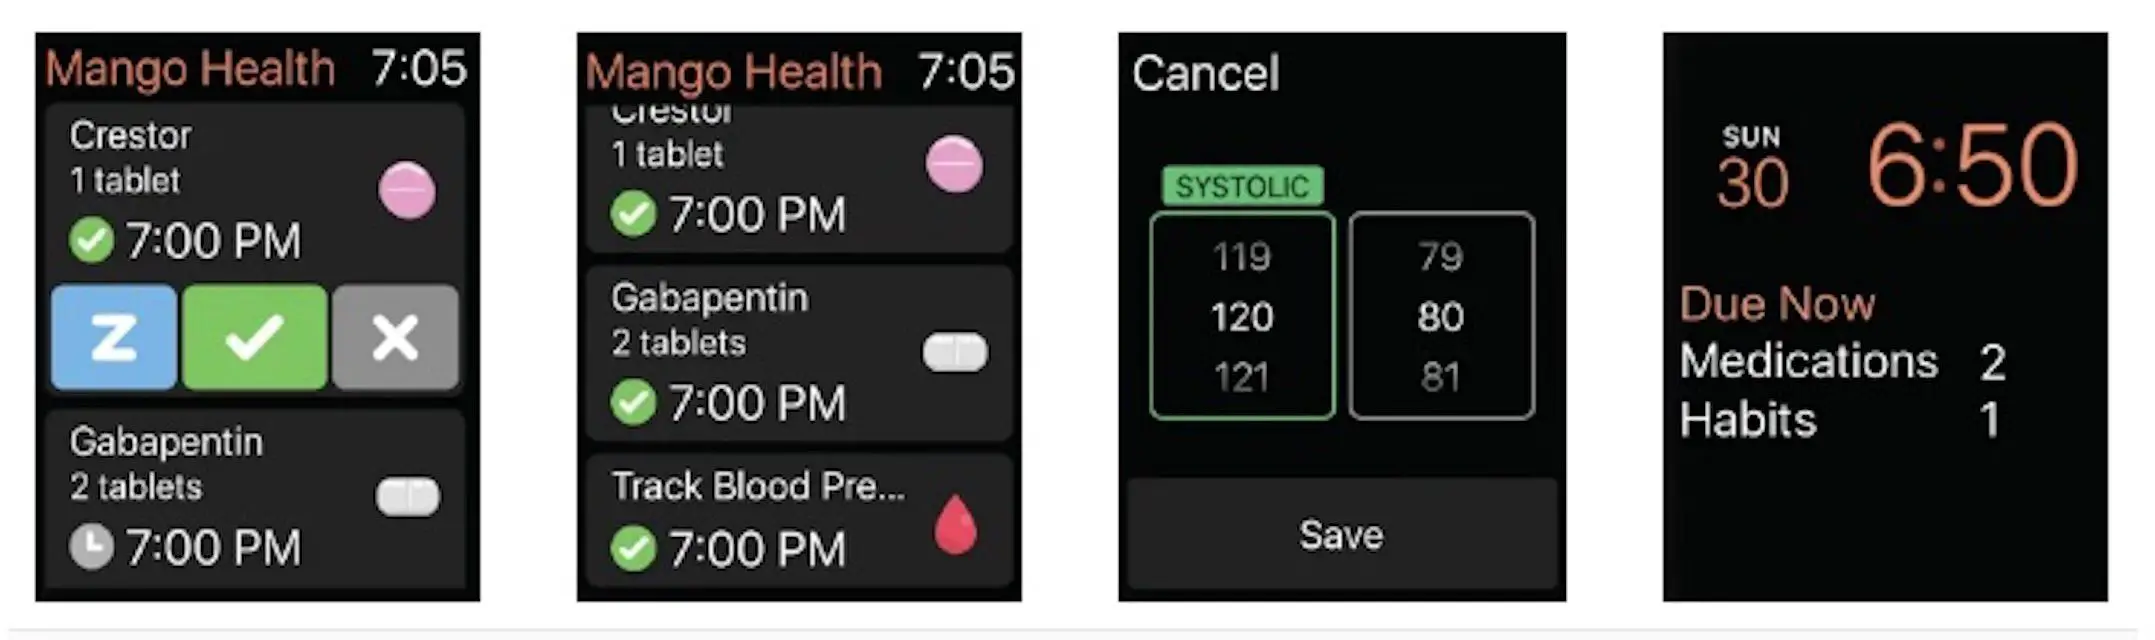 Aplicativo de lembrete de medicação Mango Health para Apple Watch